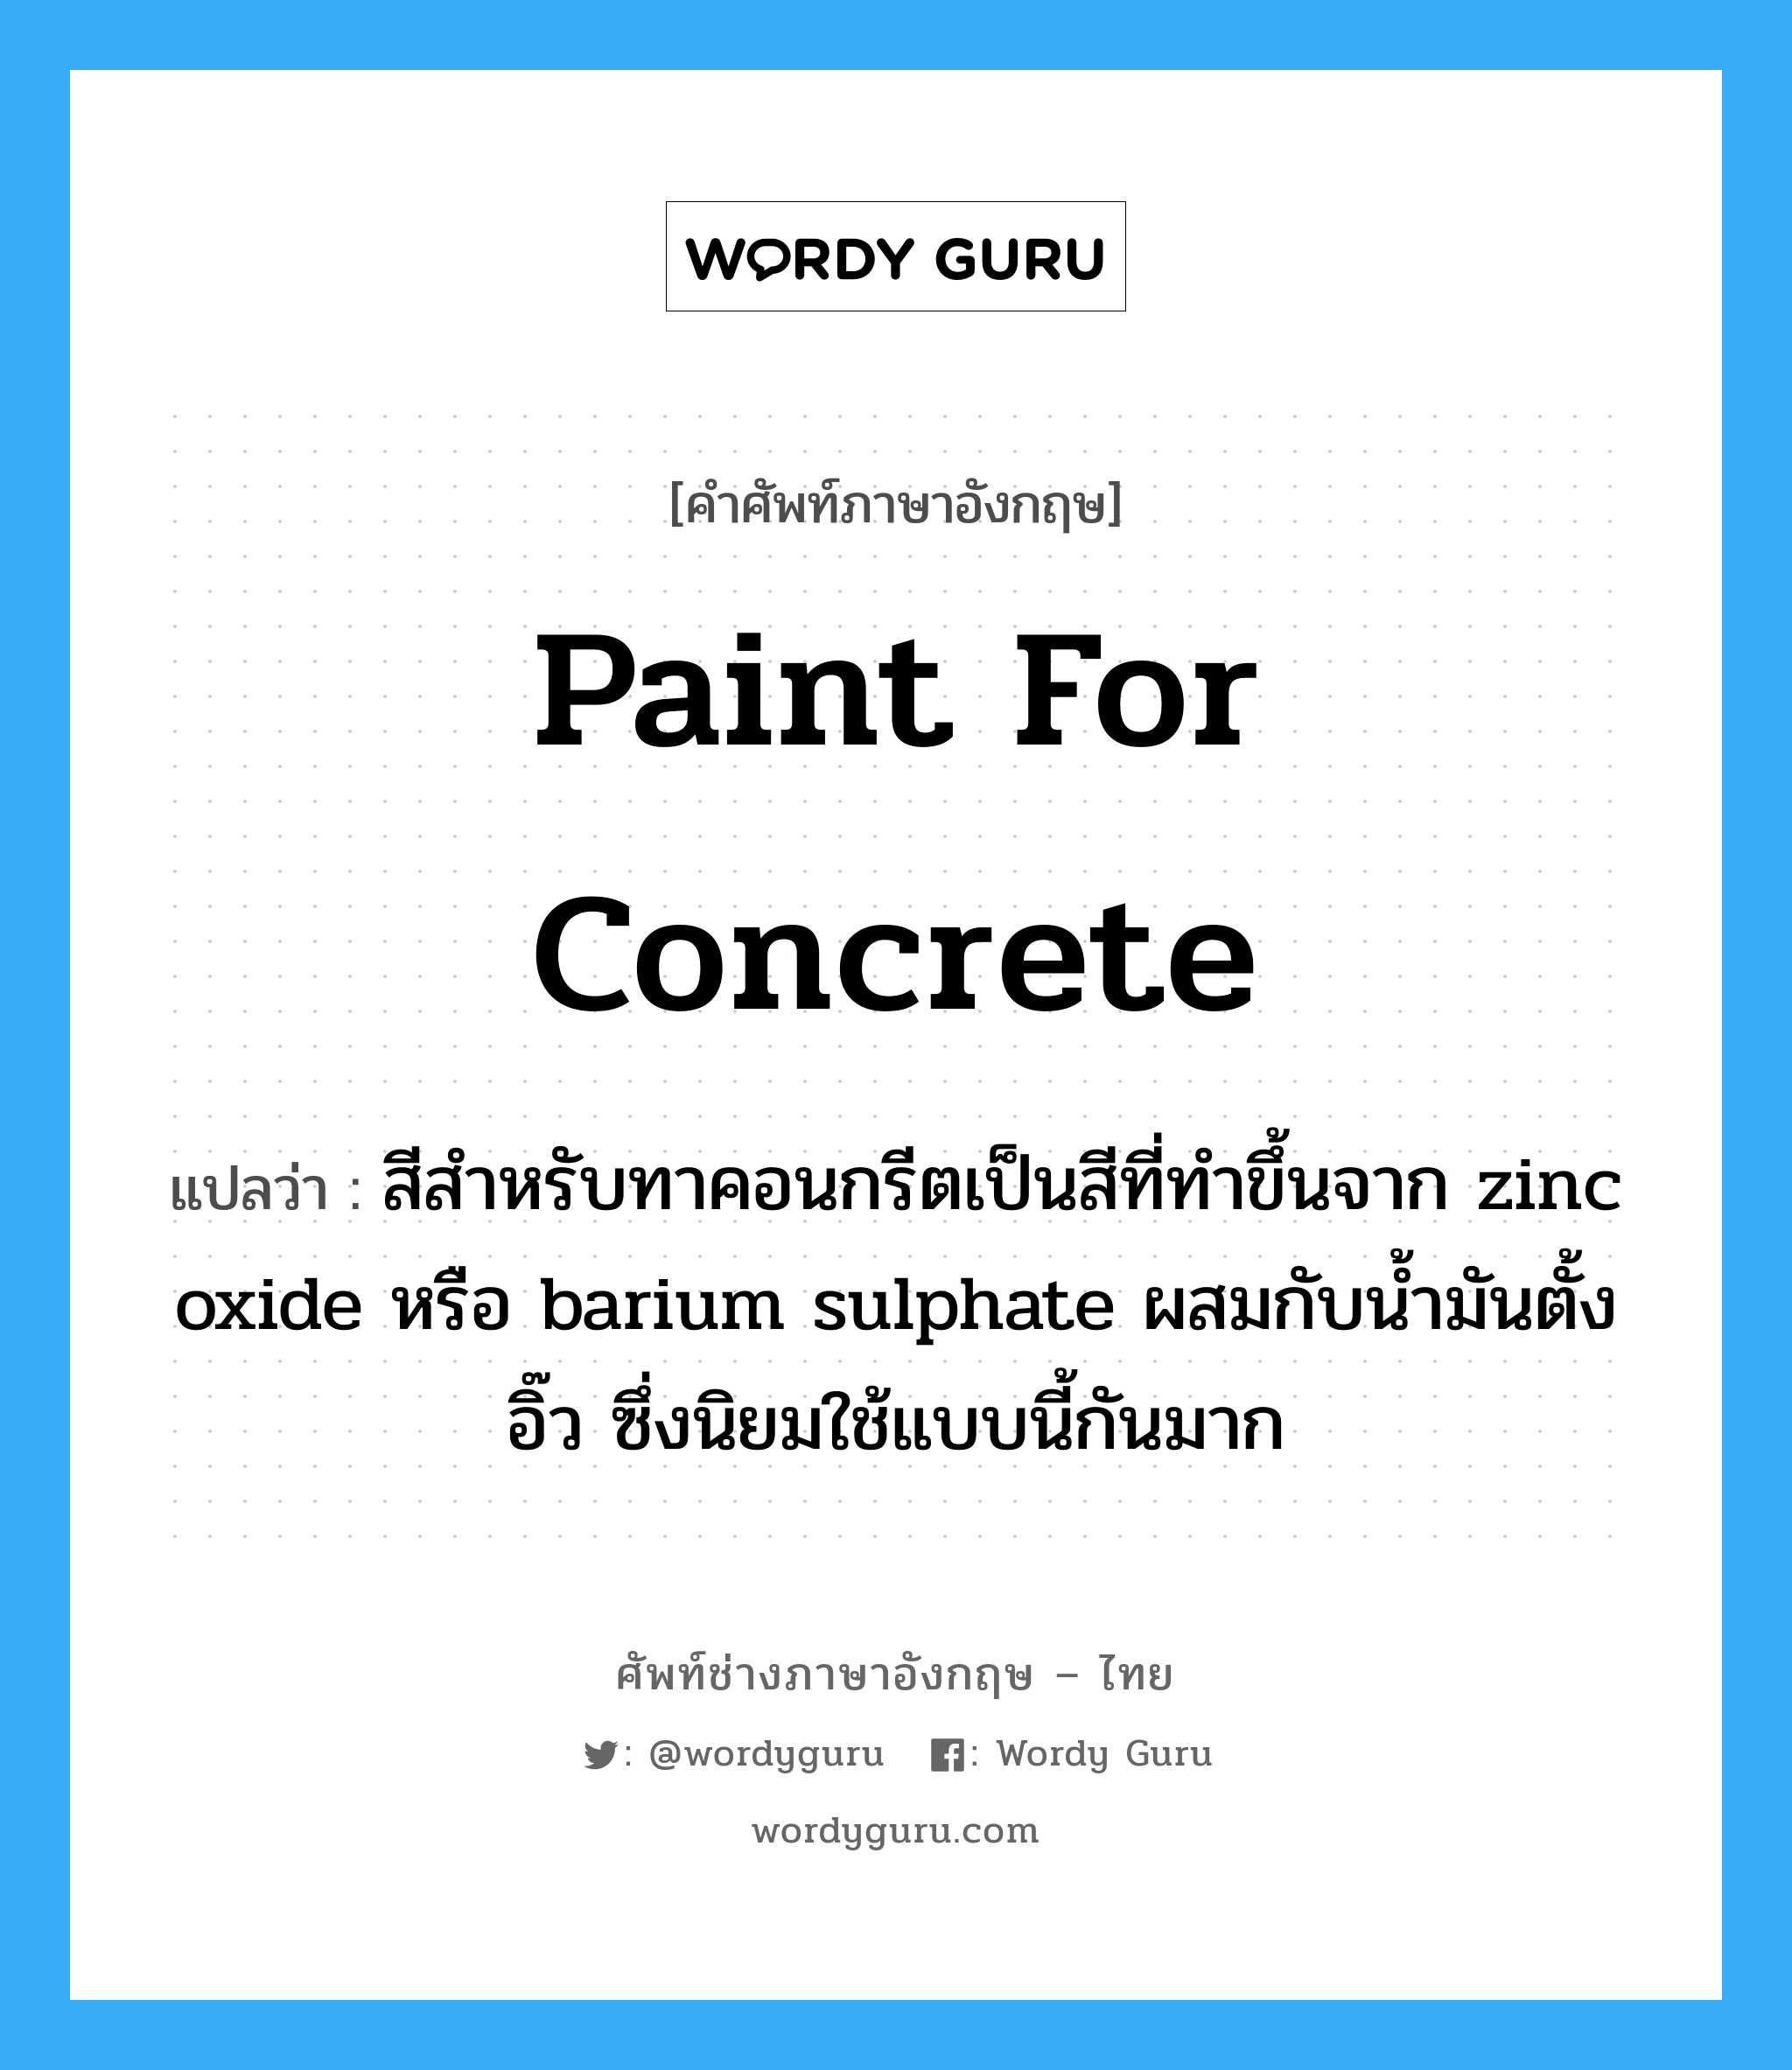 paint for concrete แปลว่า?, คำศัพท์ช่างภาษาอังกฤษ - ไทย paint for concrete คำศัพท์ภาษาอังกฤษ paint for concrete แปลว่า สีสำหรับทาคอนกรีตเป็นสีที่ทำขึ้นจาก zinc oxide หรือ barium sulphate ผสมกับน้ำมันตั้งอิ๊ว ซึ่งนิยมใช้แบบนี้กันมาก